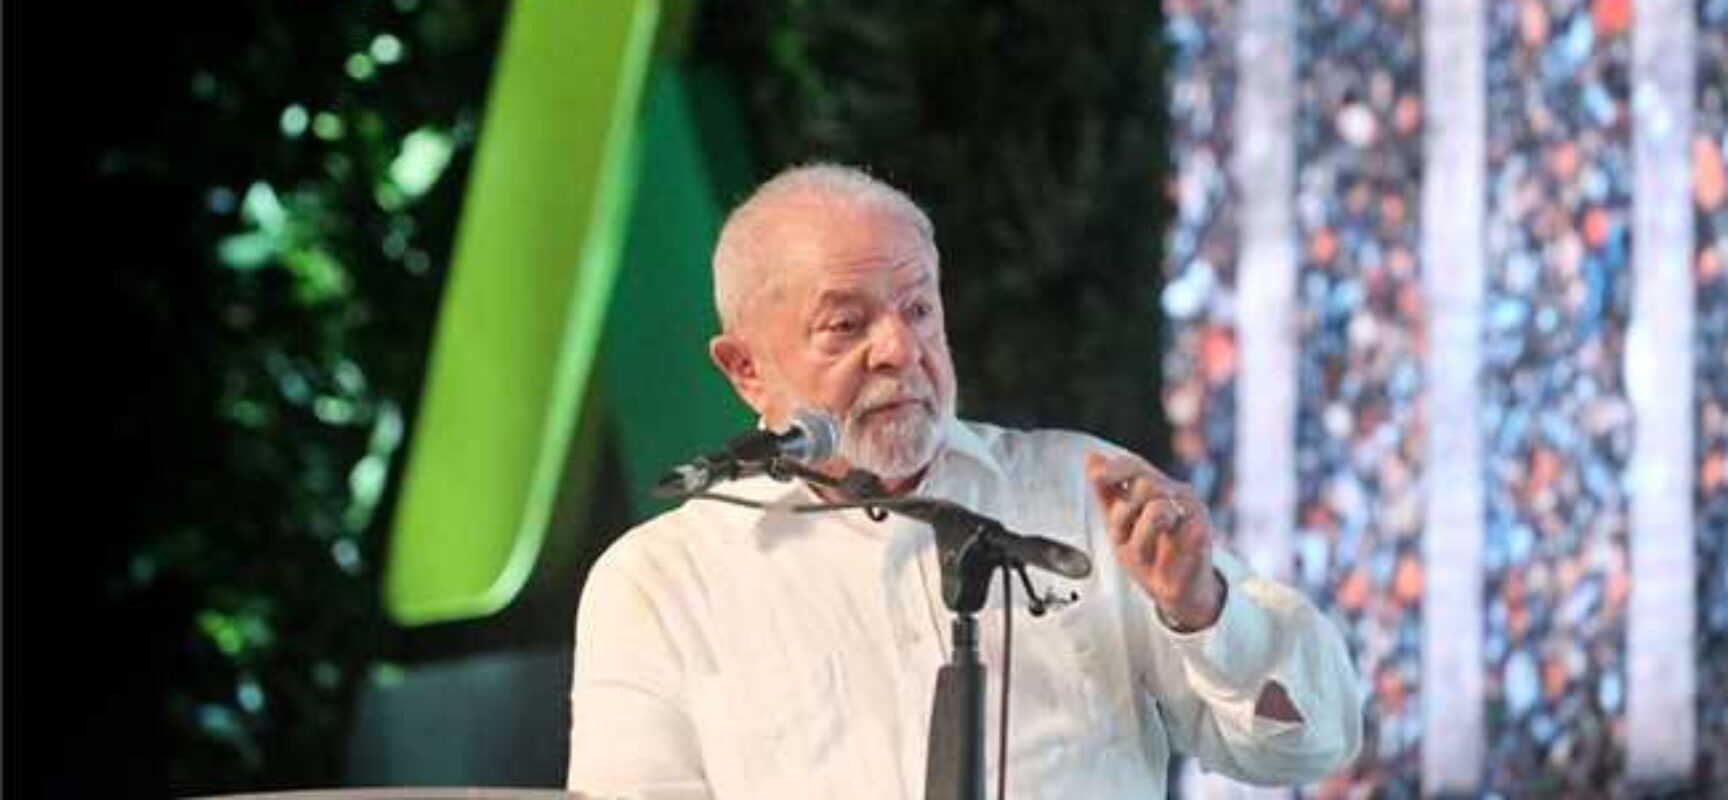 Presidente Lula dá sinal verde para pedido de prefeitos sobre construção de novo aeroporto em Ilhéus